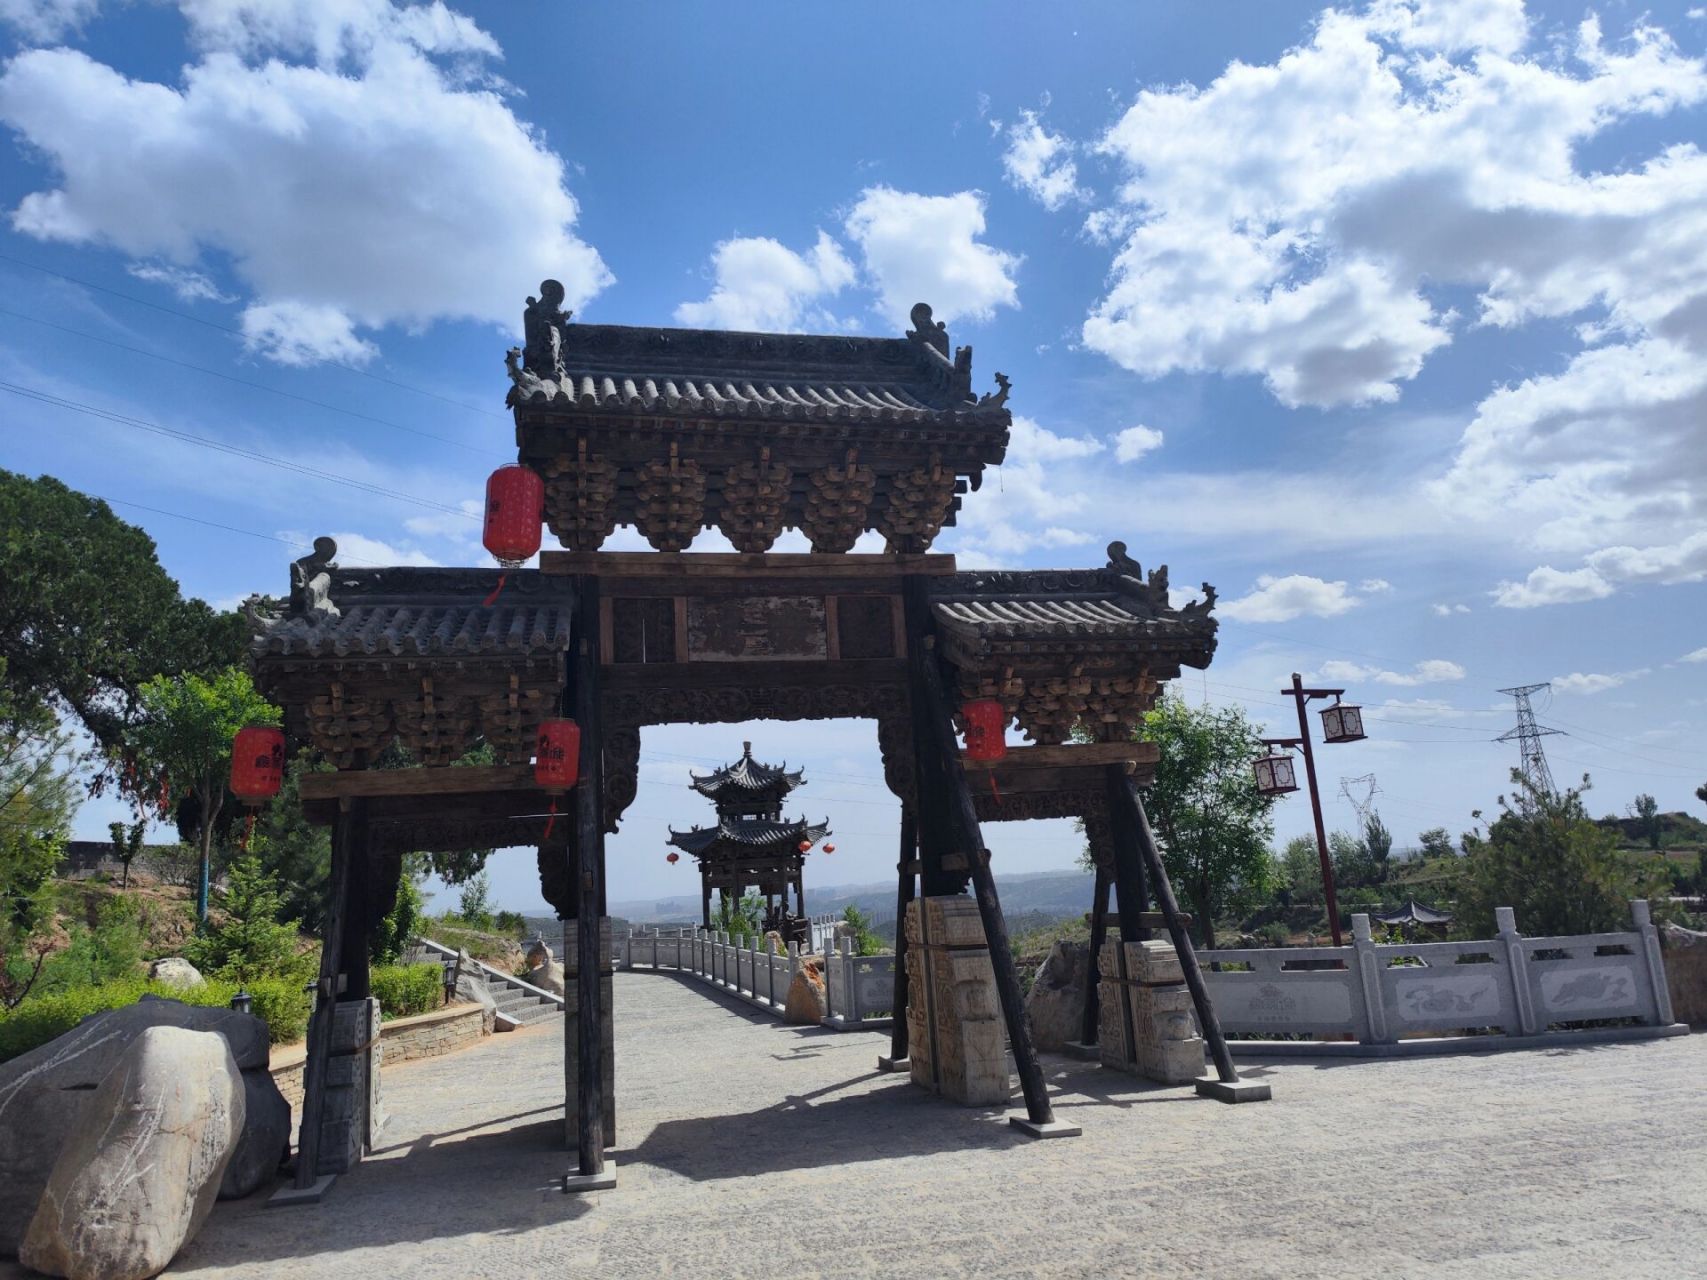 神木杨家城 神木杨家城,又名麟州故城,始建于唐代,历史悠久,是古代